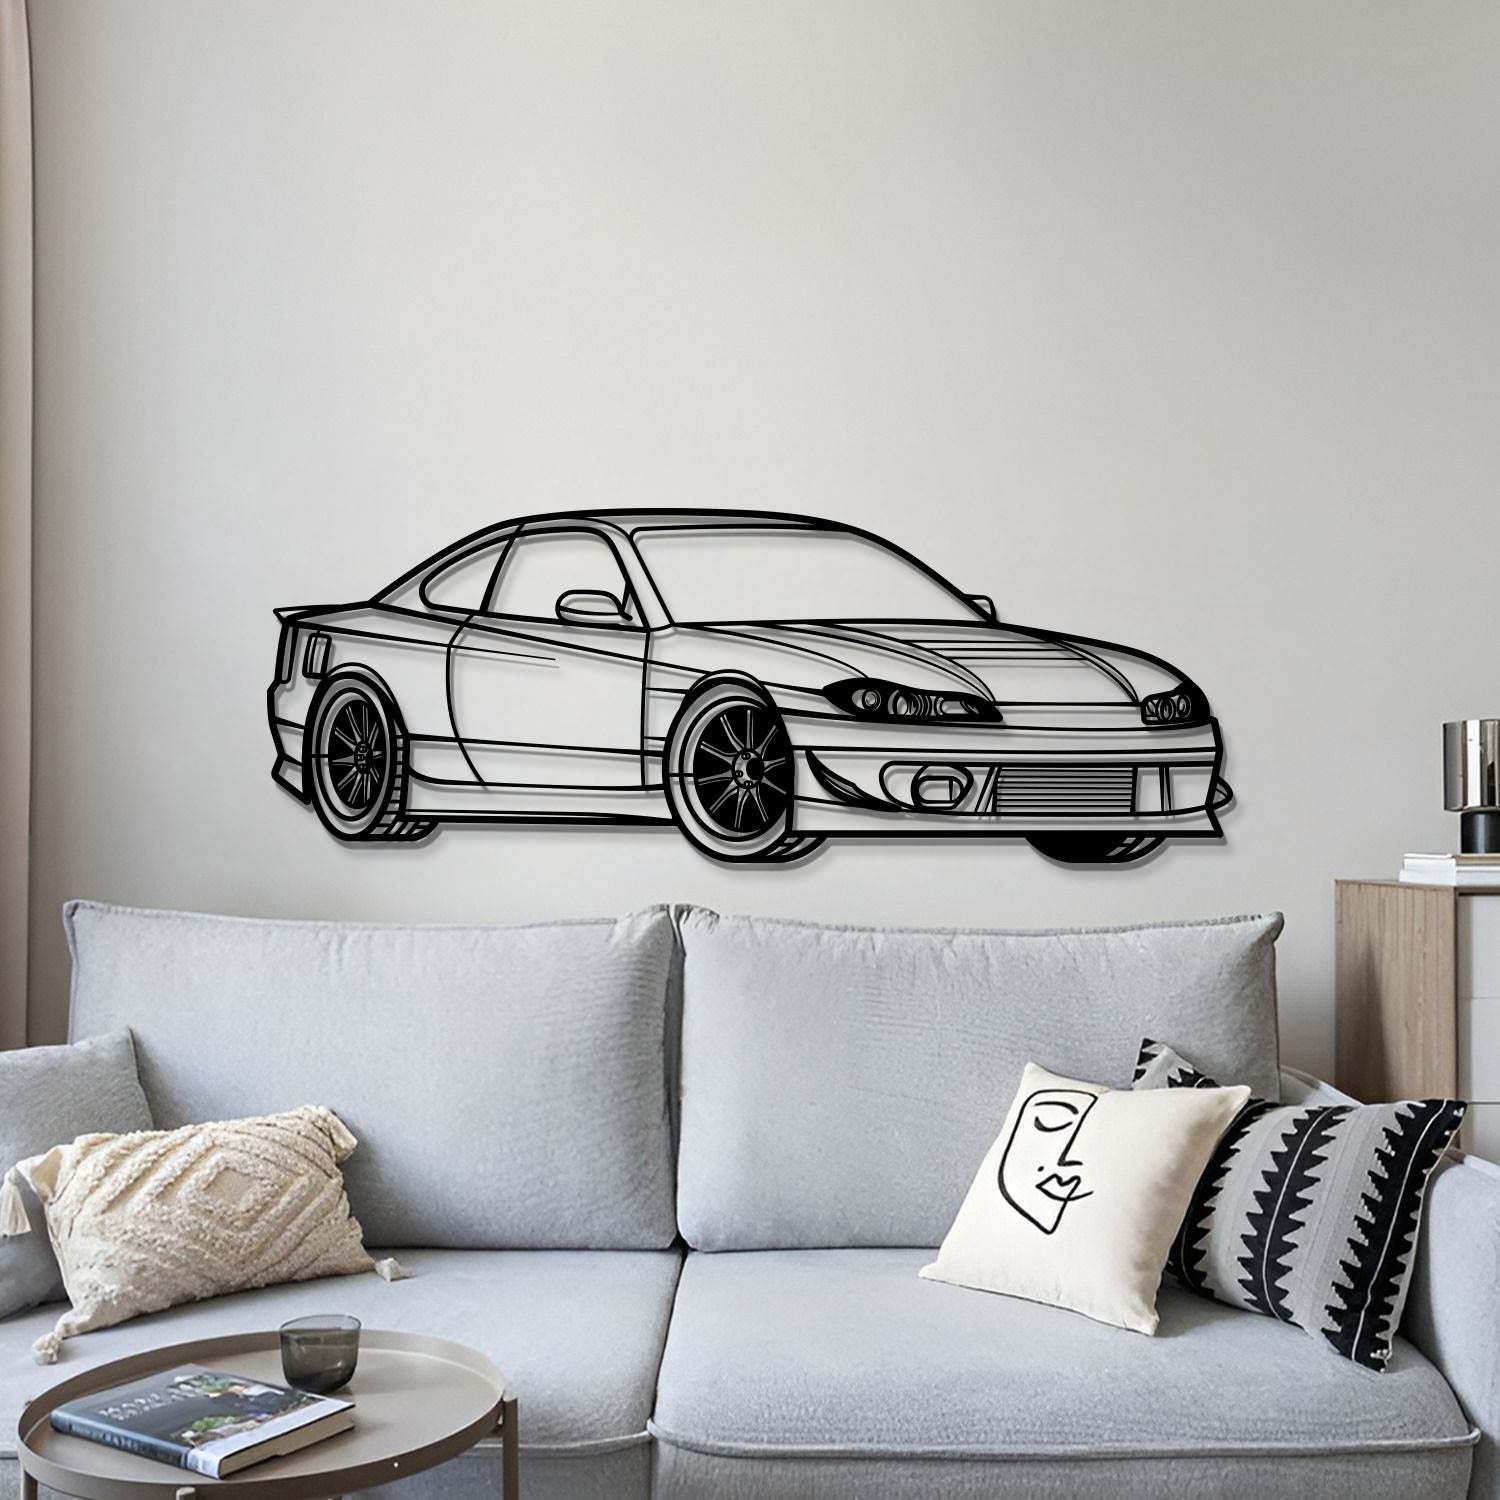 Silvia S15 Perspective Metal Car Wall Art - MT1135